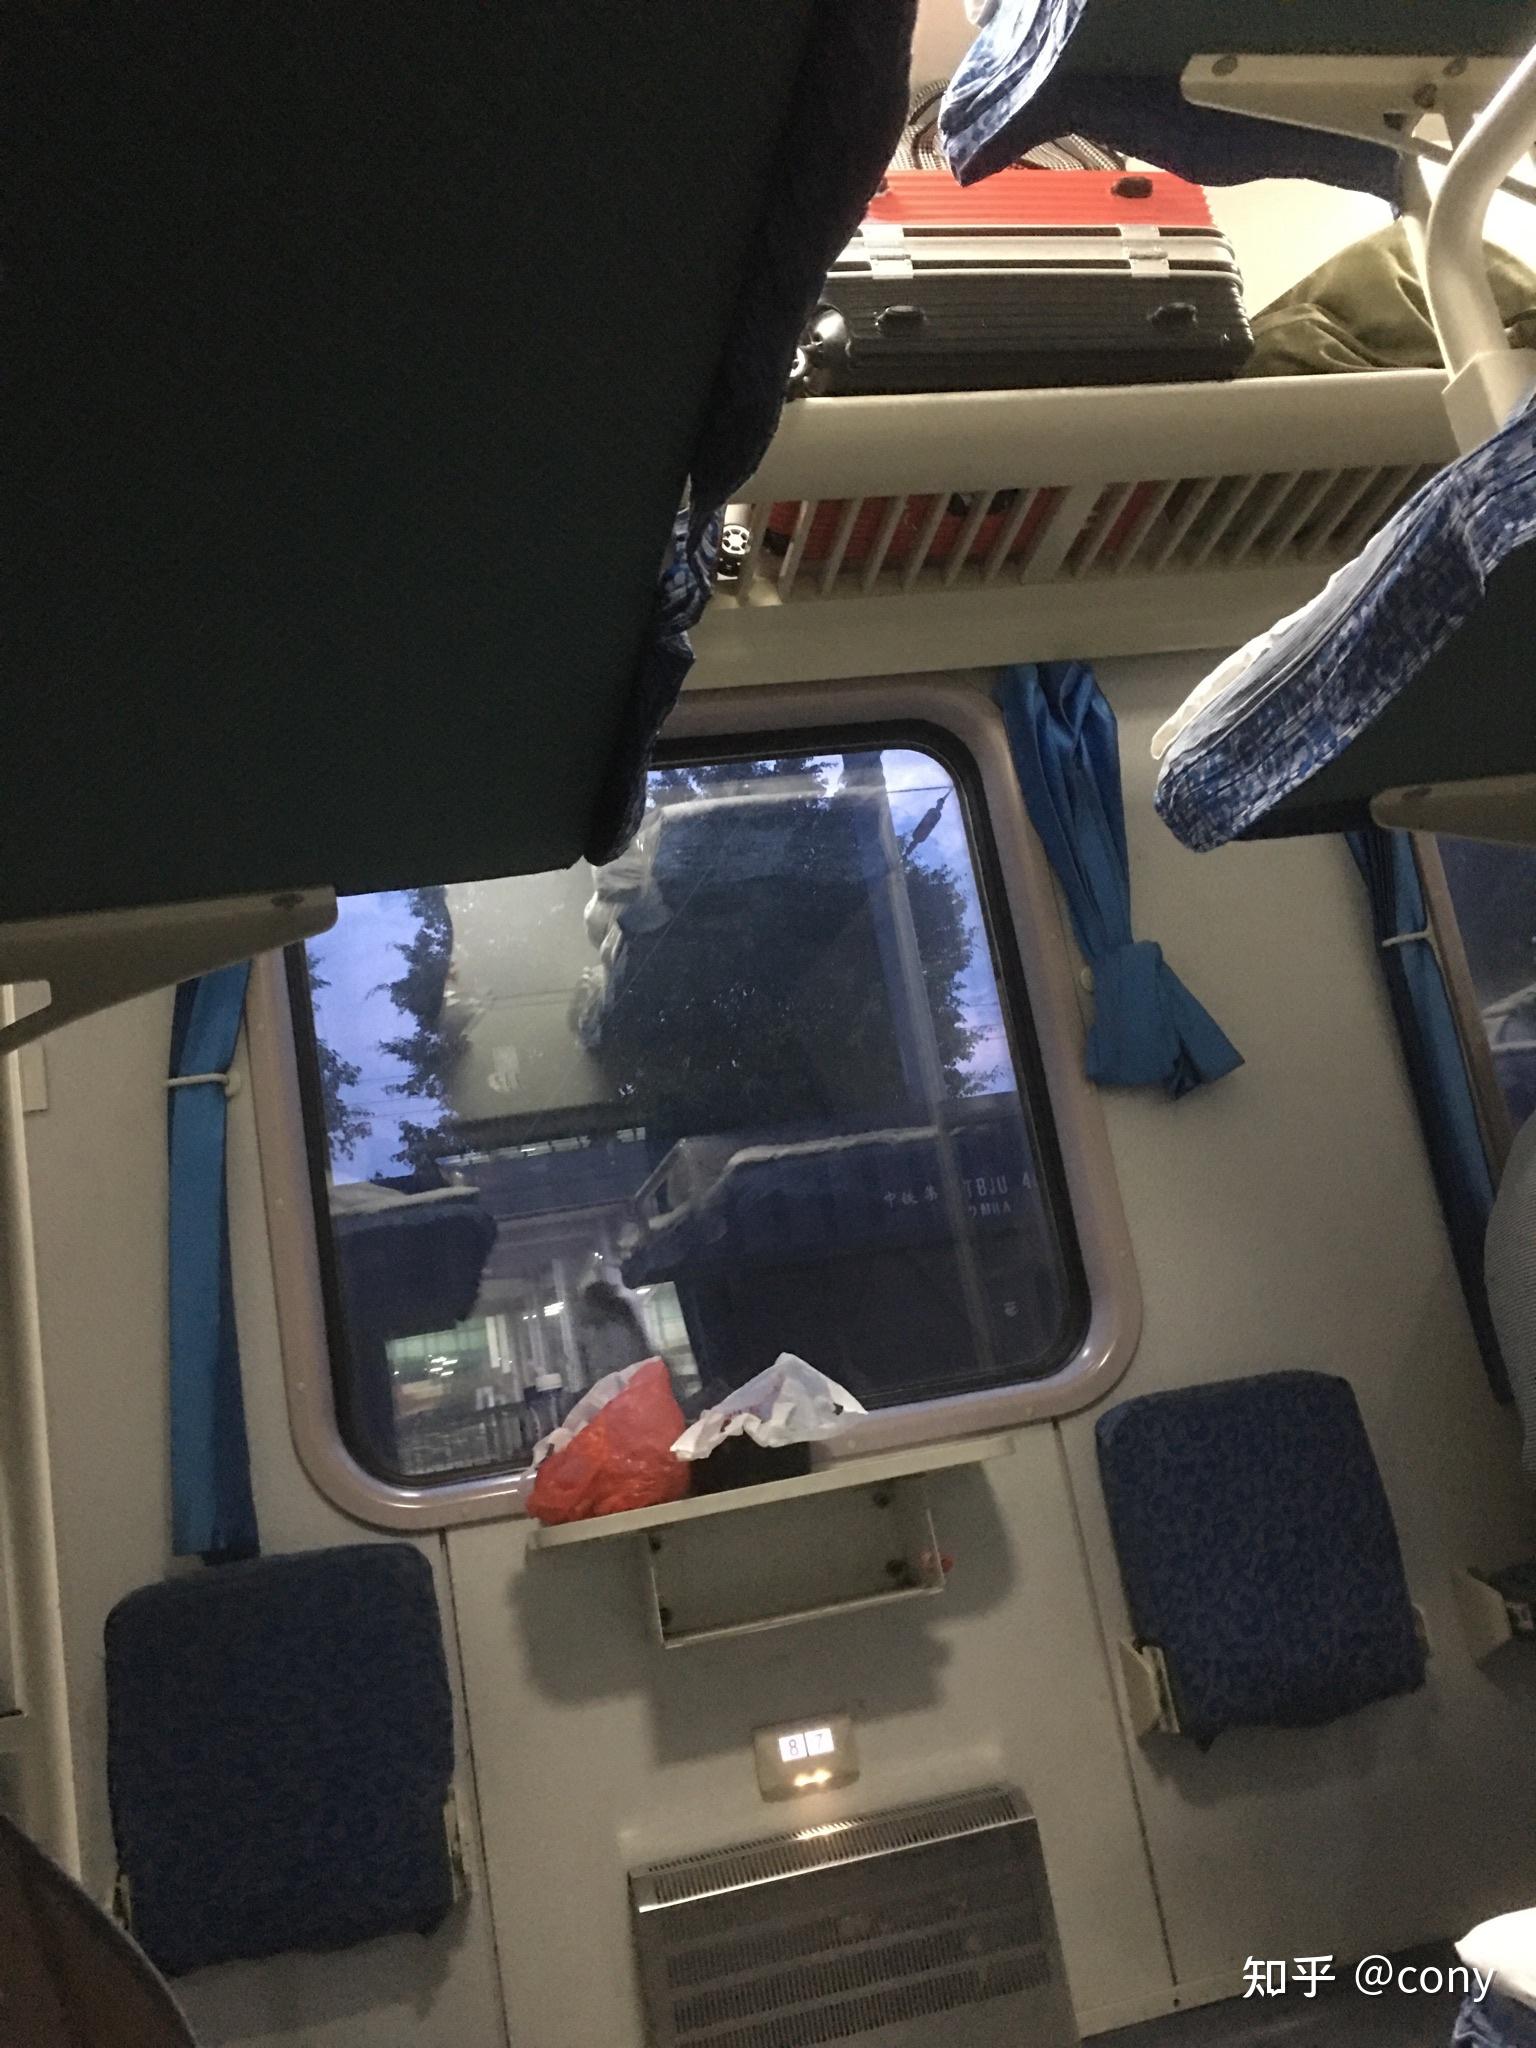 火车车厢内图片硬卧图片